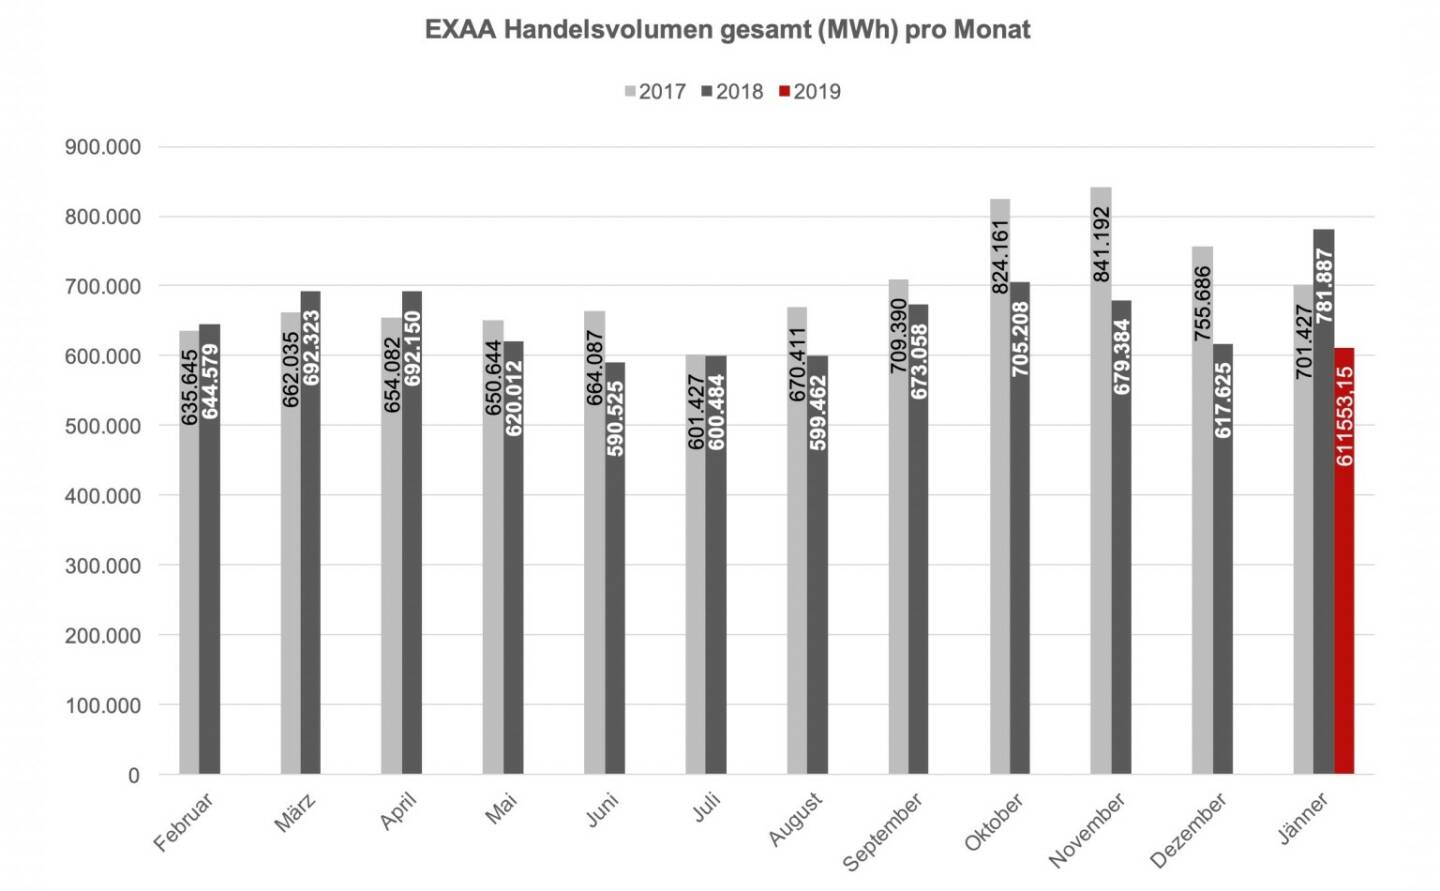 Betrachtet man den österreichischen und deutschen Markt getrennt, so konnte im österreichischen Liefergebiet ein Volumen von 237.122,2 MWh und im deutschen Liefergebiet ein Volumen von 374.431,0 MWh erzielt werden. Somit wurden 38,8 % des Gesamtvolumens im österreichischen Liefergebiet auktioniert.
Die Preise betrugen im Jänner 2019 im Monatsmittel im österreichischen Marktgebiet für das Baseprodukt (00-24 Uhr) 57,32 EUR/MWh und für das Peakprodukt (08-20 Uhr) 65,04 EUR/MWh, im deutschen Marktgebiet betrugen die Preise für das Baseprodukt (00-24 Uhr) 50,45 EUR/MWh und für das Peakprodukt (08-20 Uhr) 58,41 EUR/MWh.